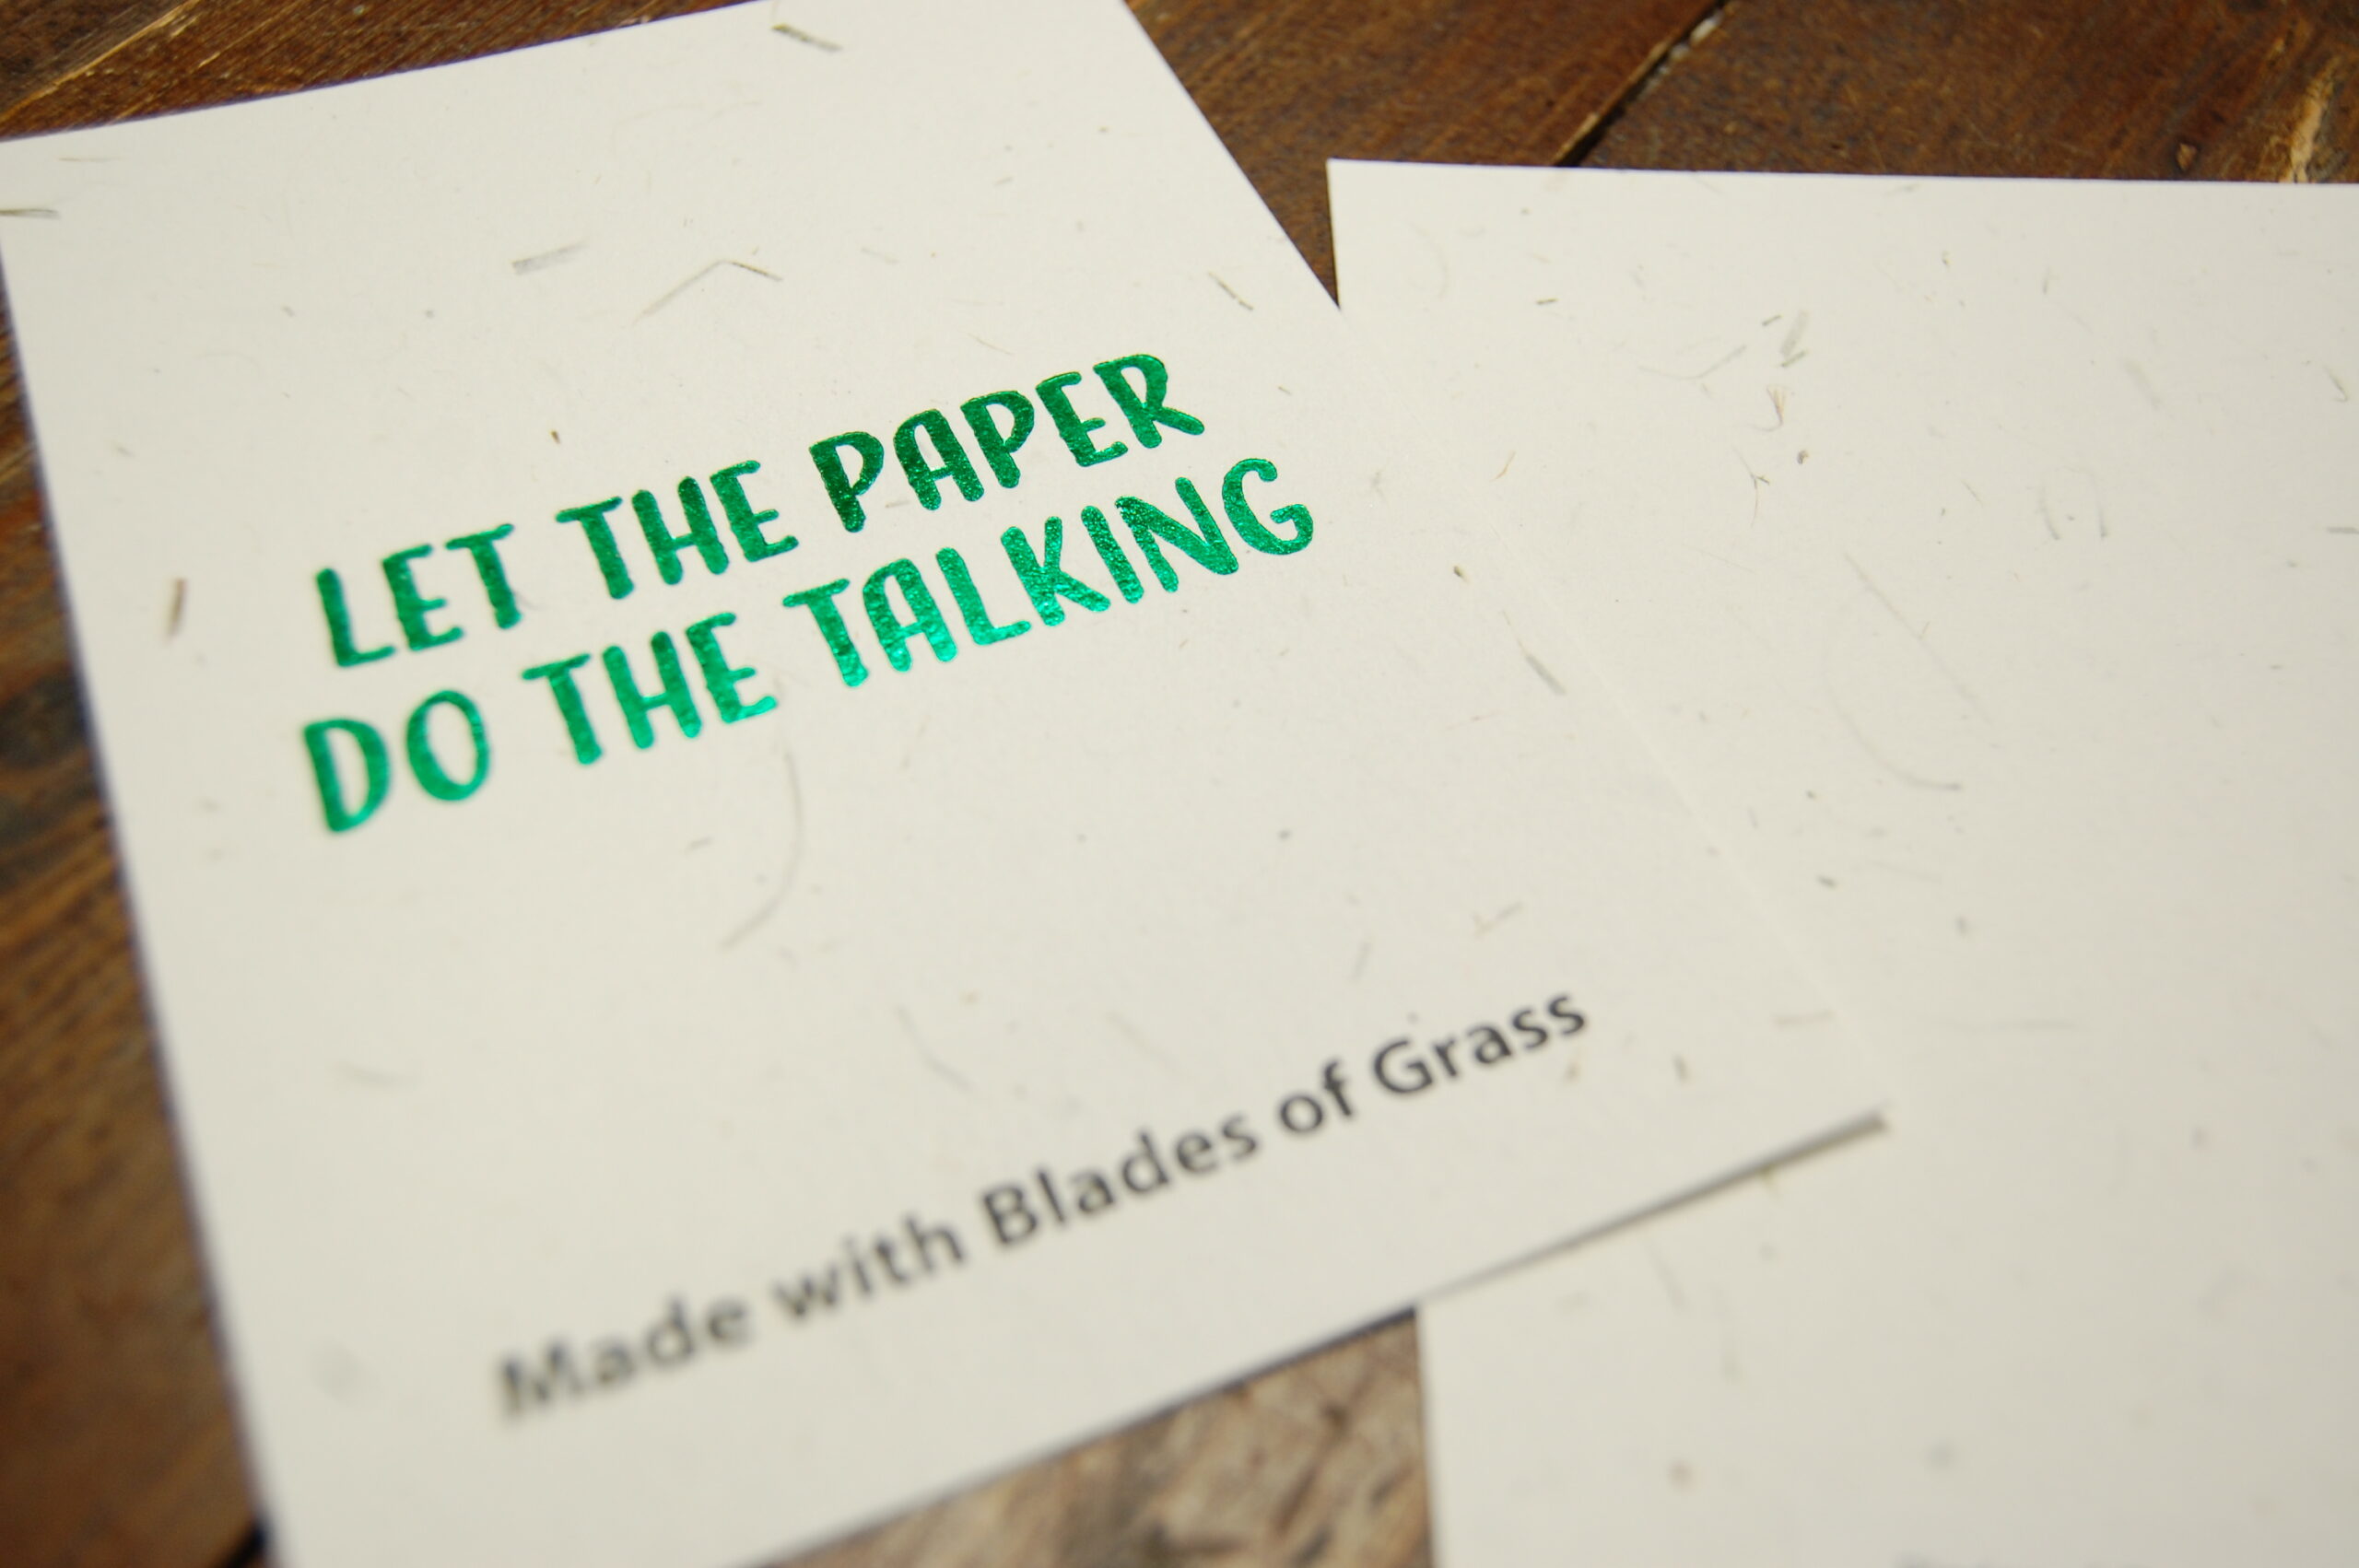 Blade of Grass paper